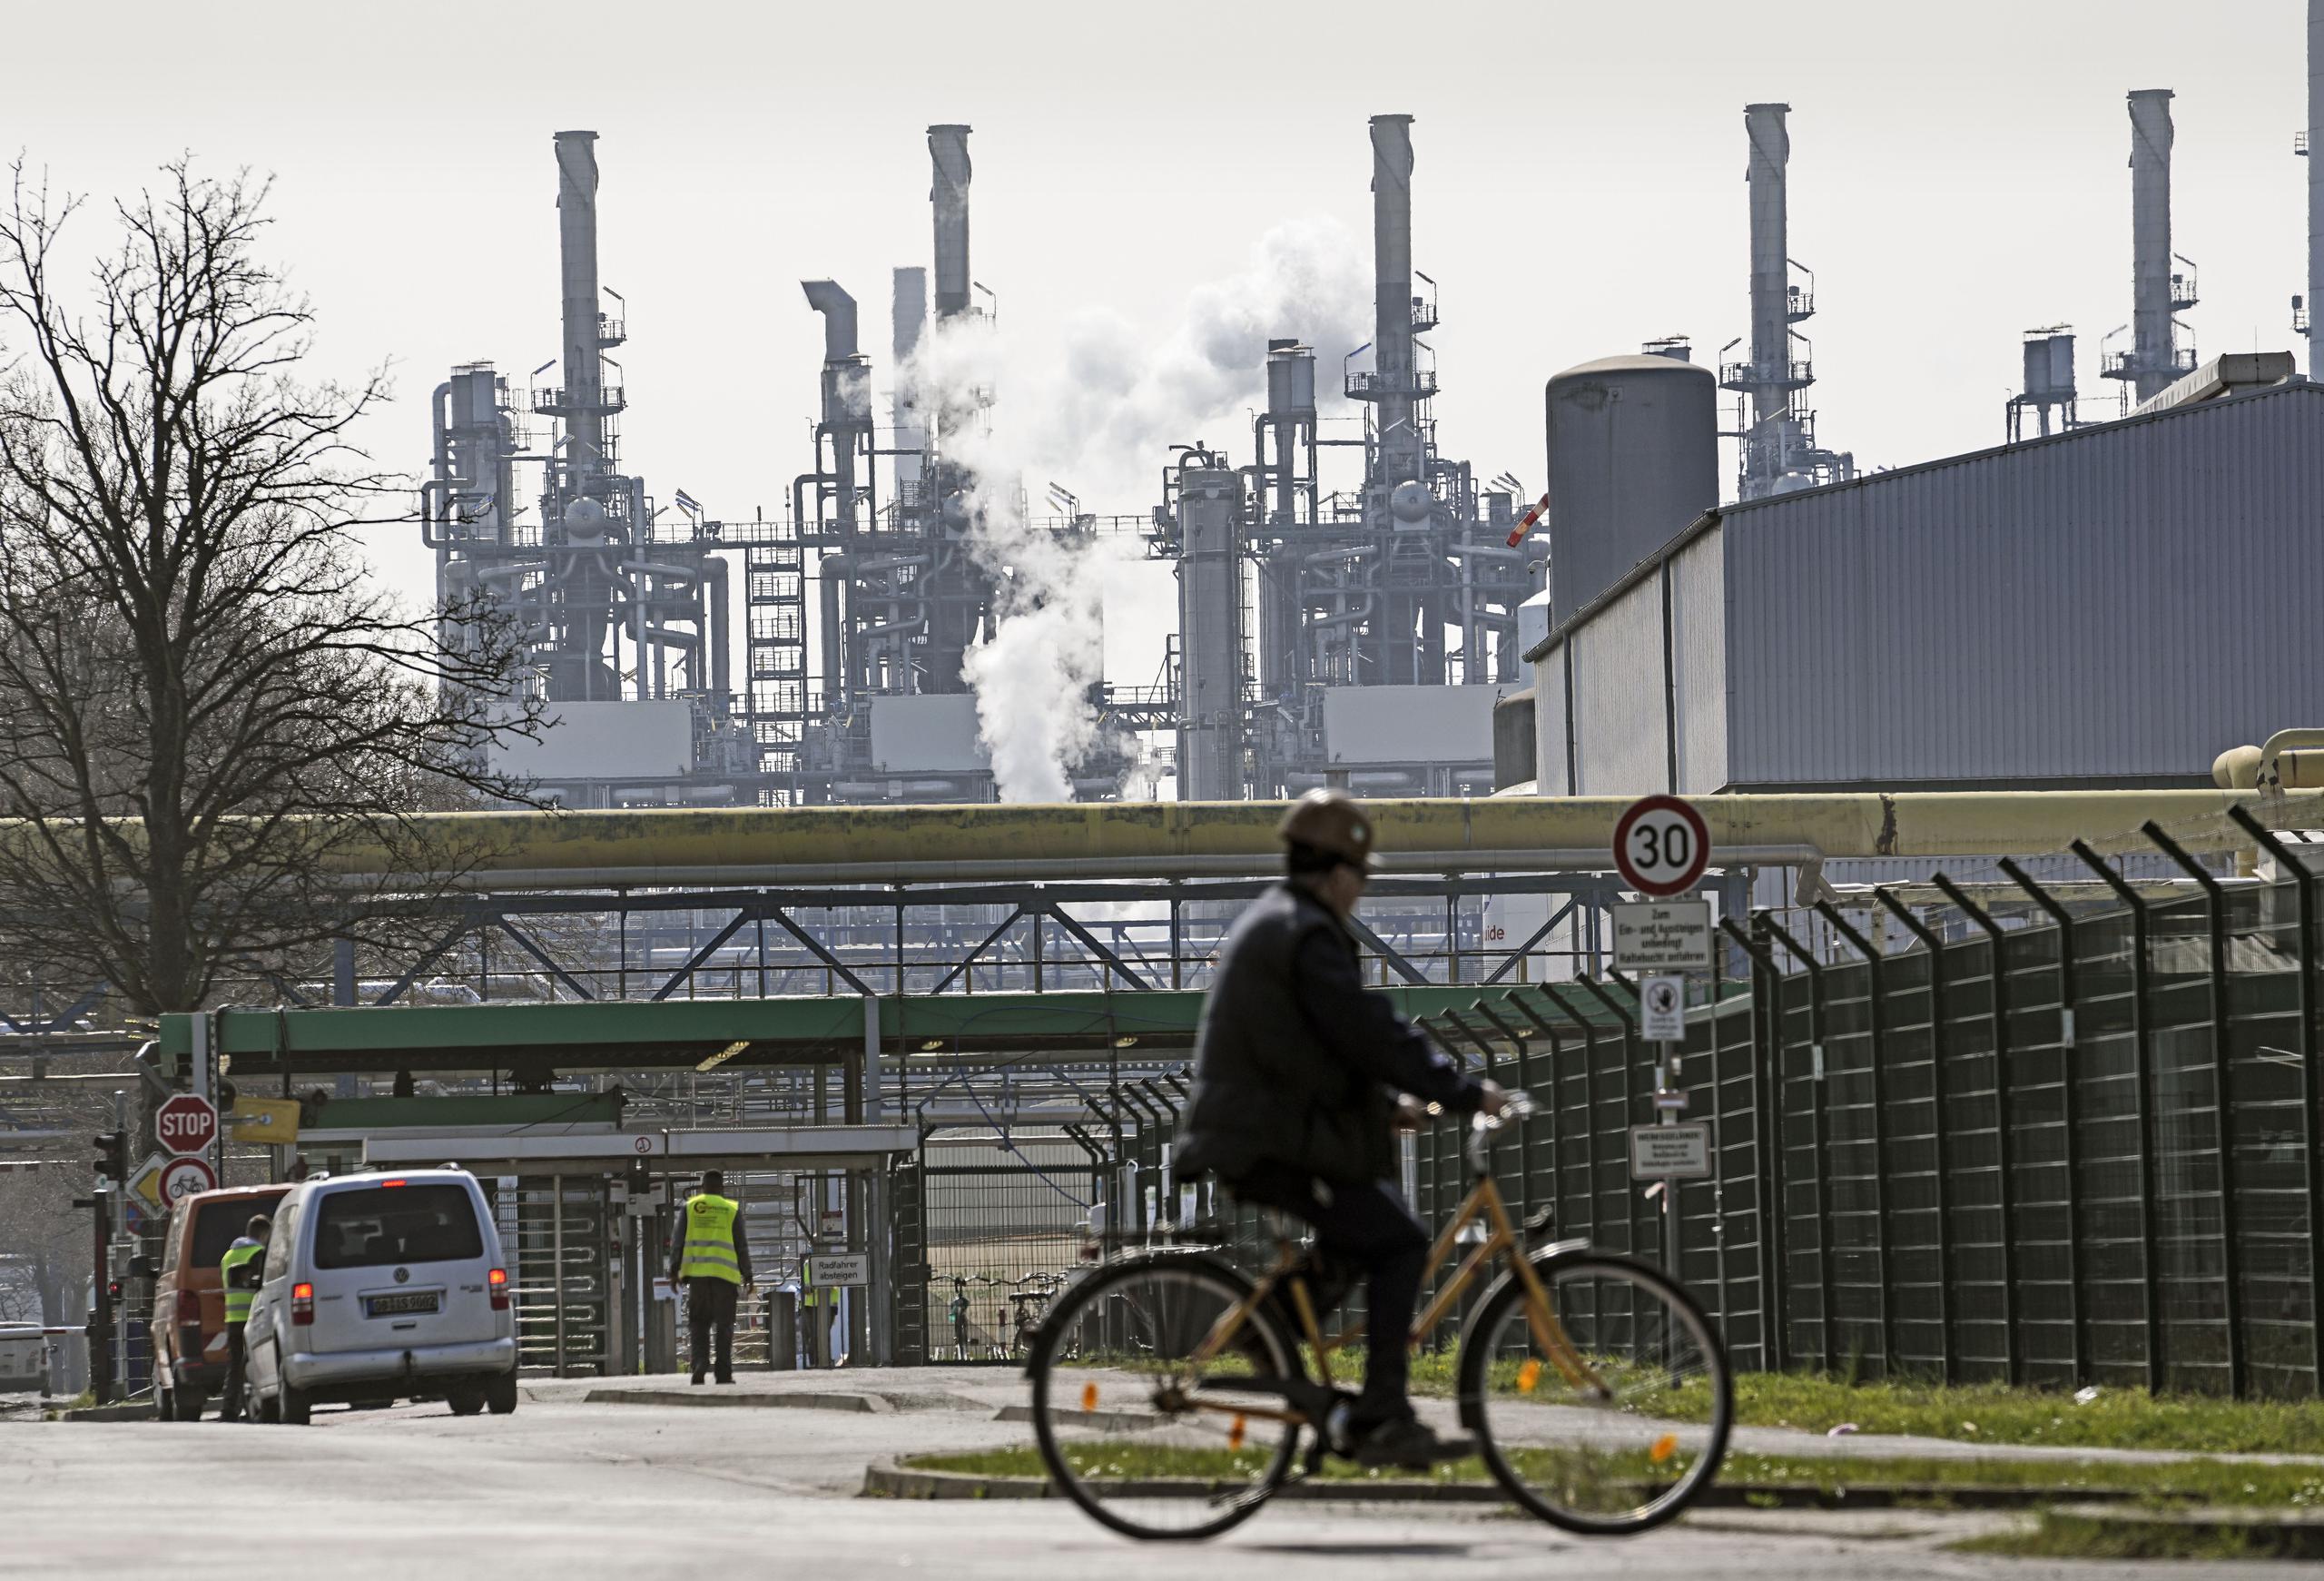 Una persona llega en bicicleta a la refinería BP Ruhr Oil en Gelsenkirchen, Alemania, el lunes 28 de marzo de 2022. (AP Foto/Martin Meissner)